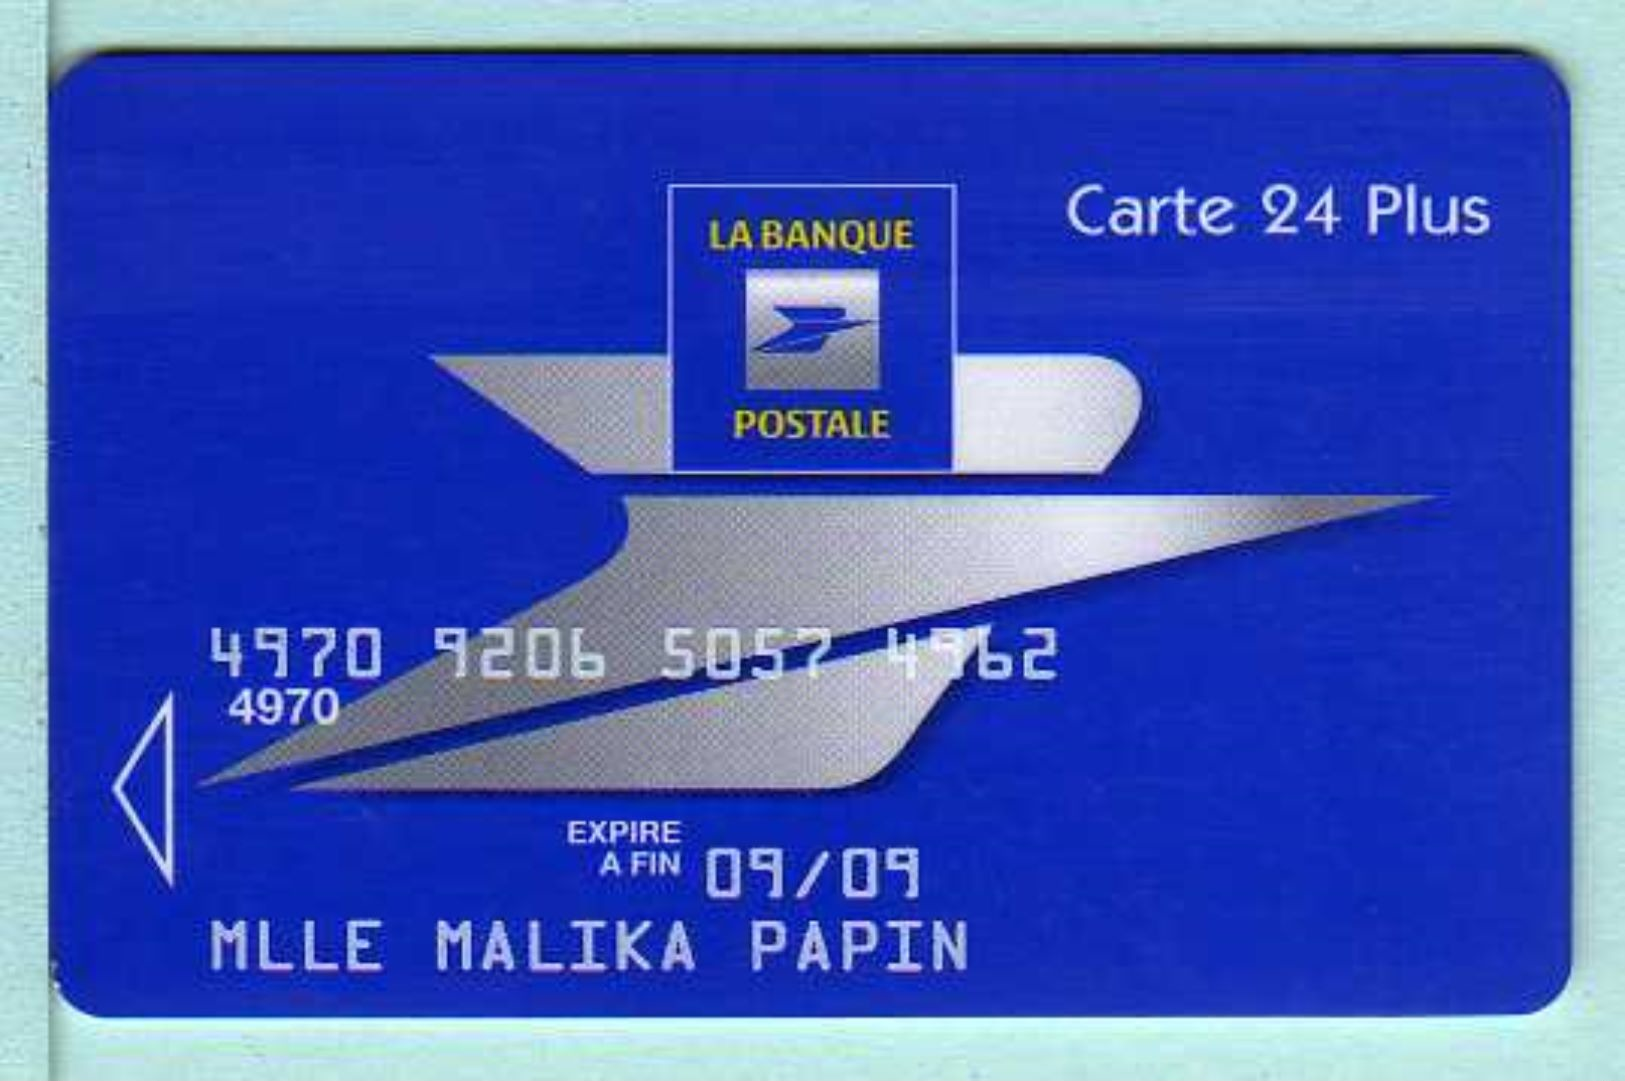 Carte La Poste - Expire Fin 09/09 (2 Scans) - Cartes Bancaires Jetables